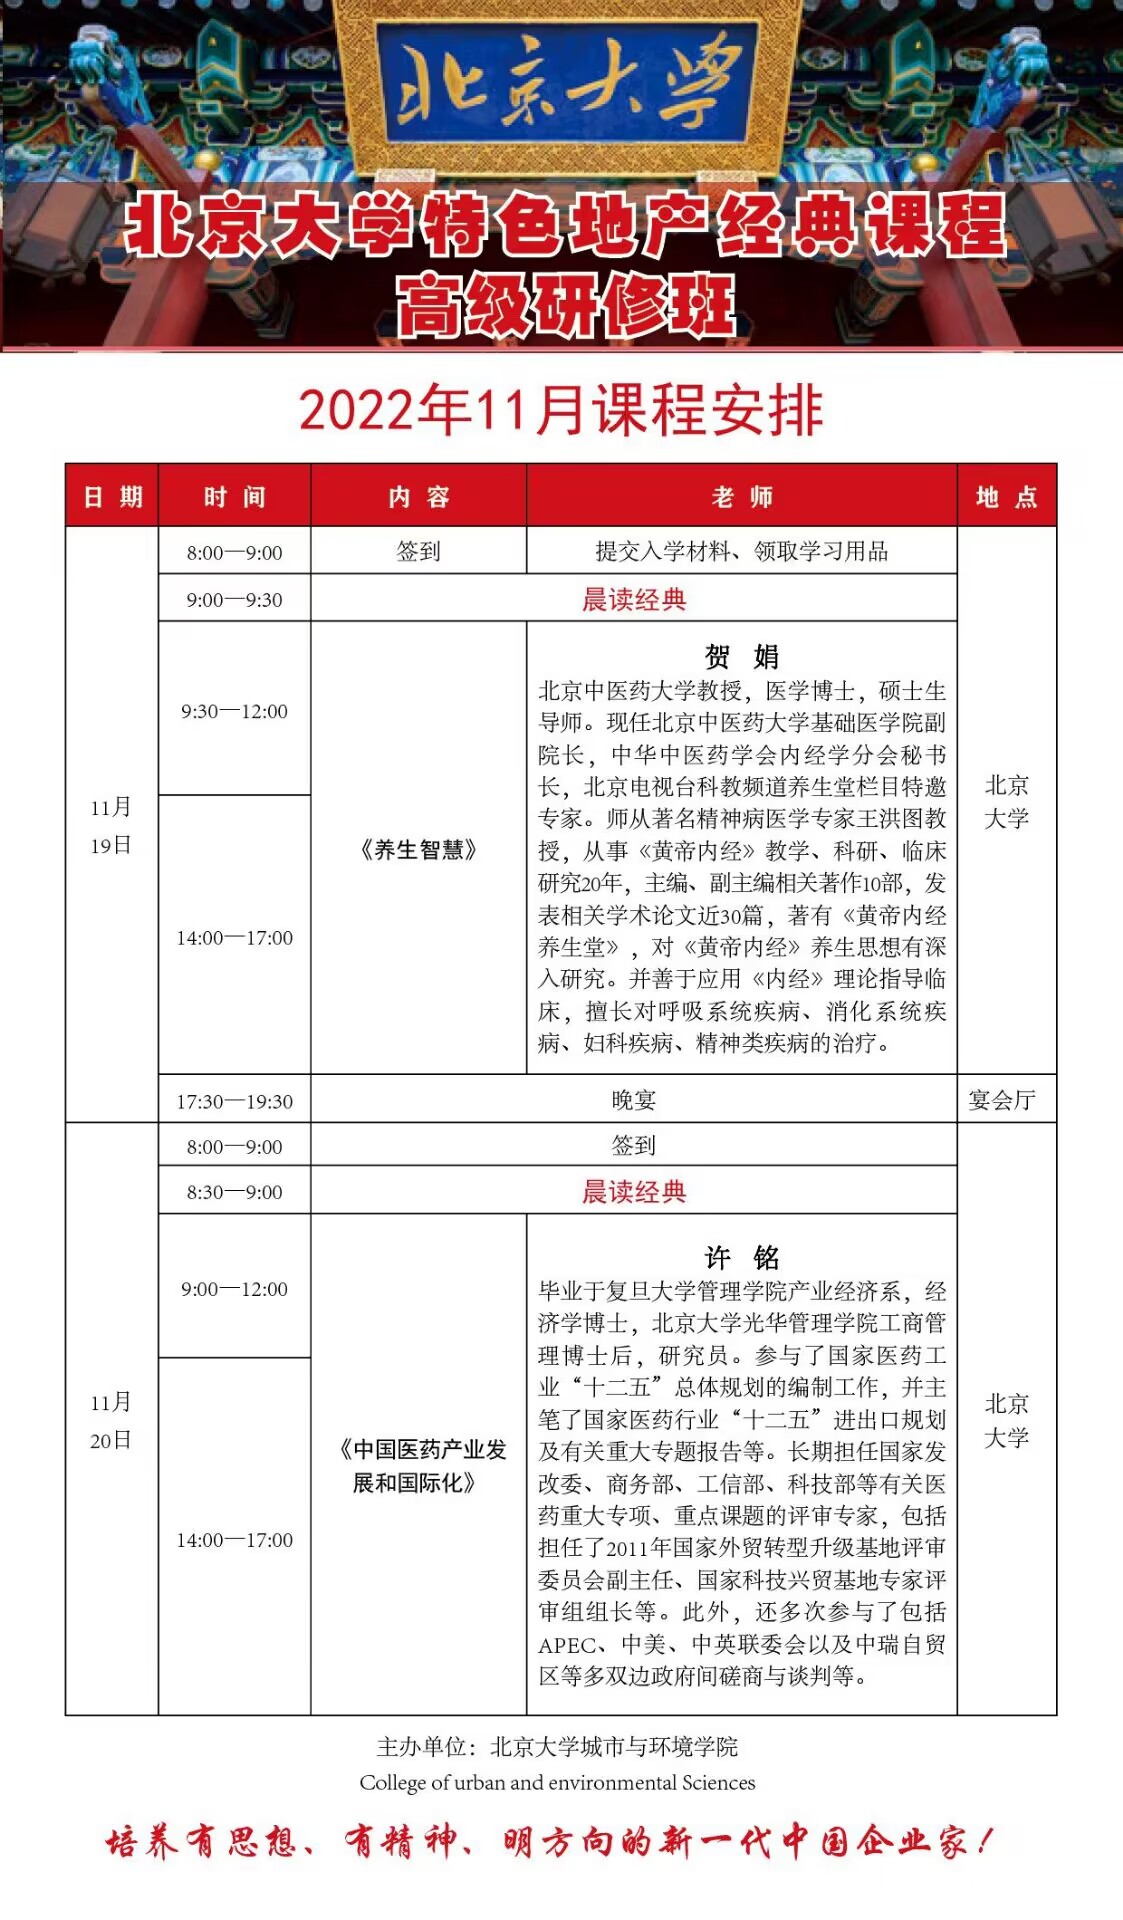 北京大学特色地产经典课程高级研修班2022年11月上课通知